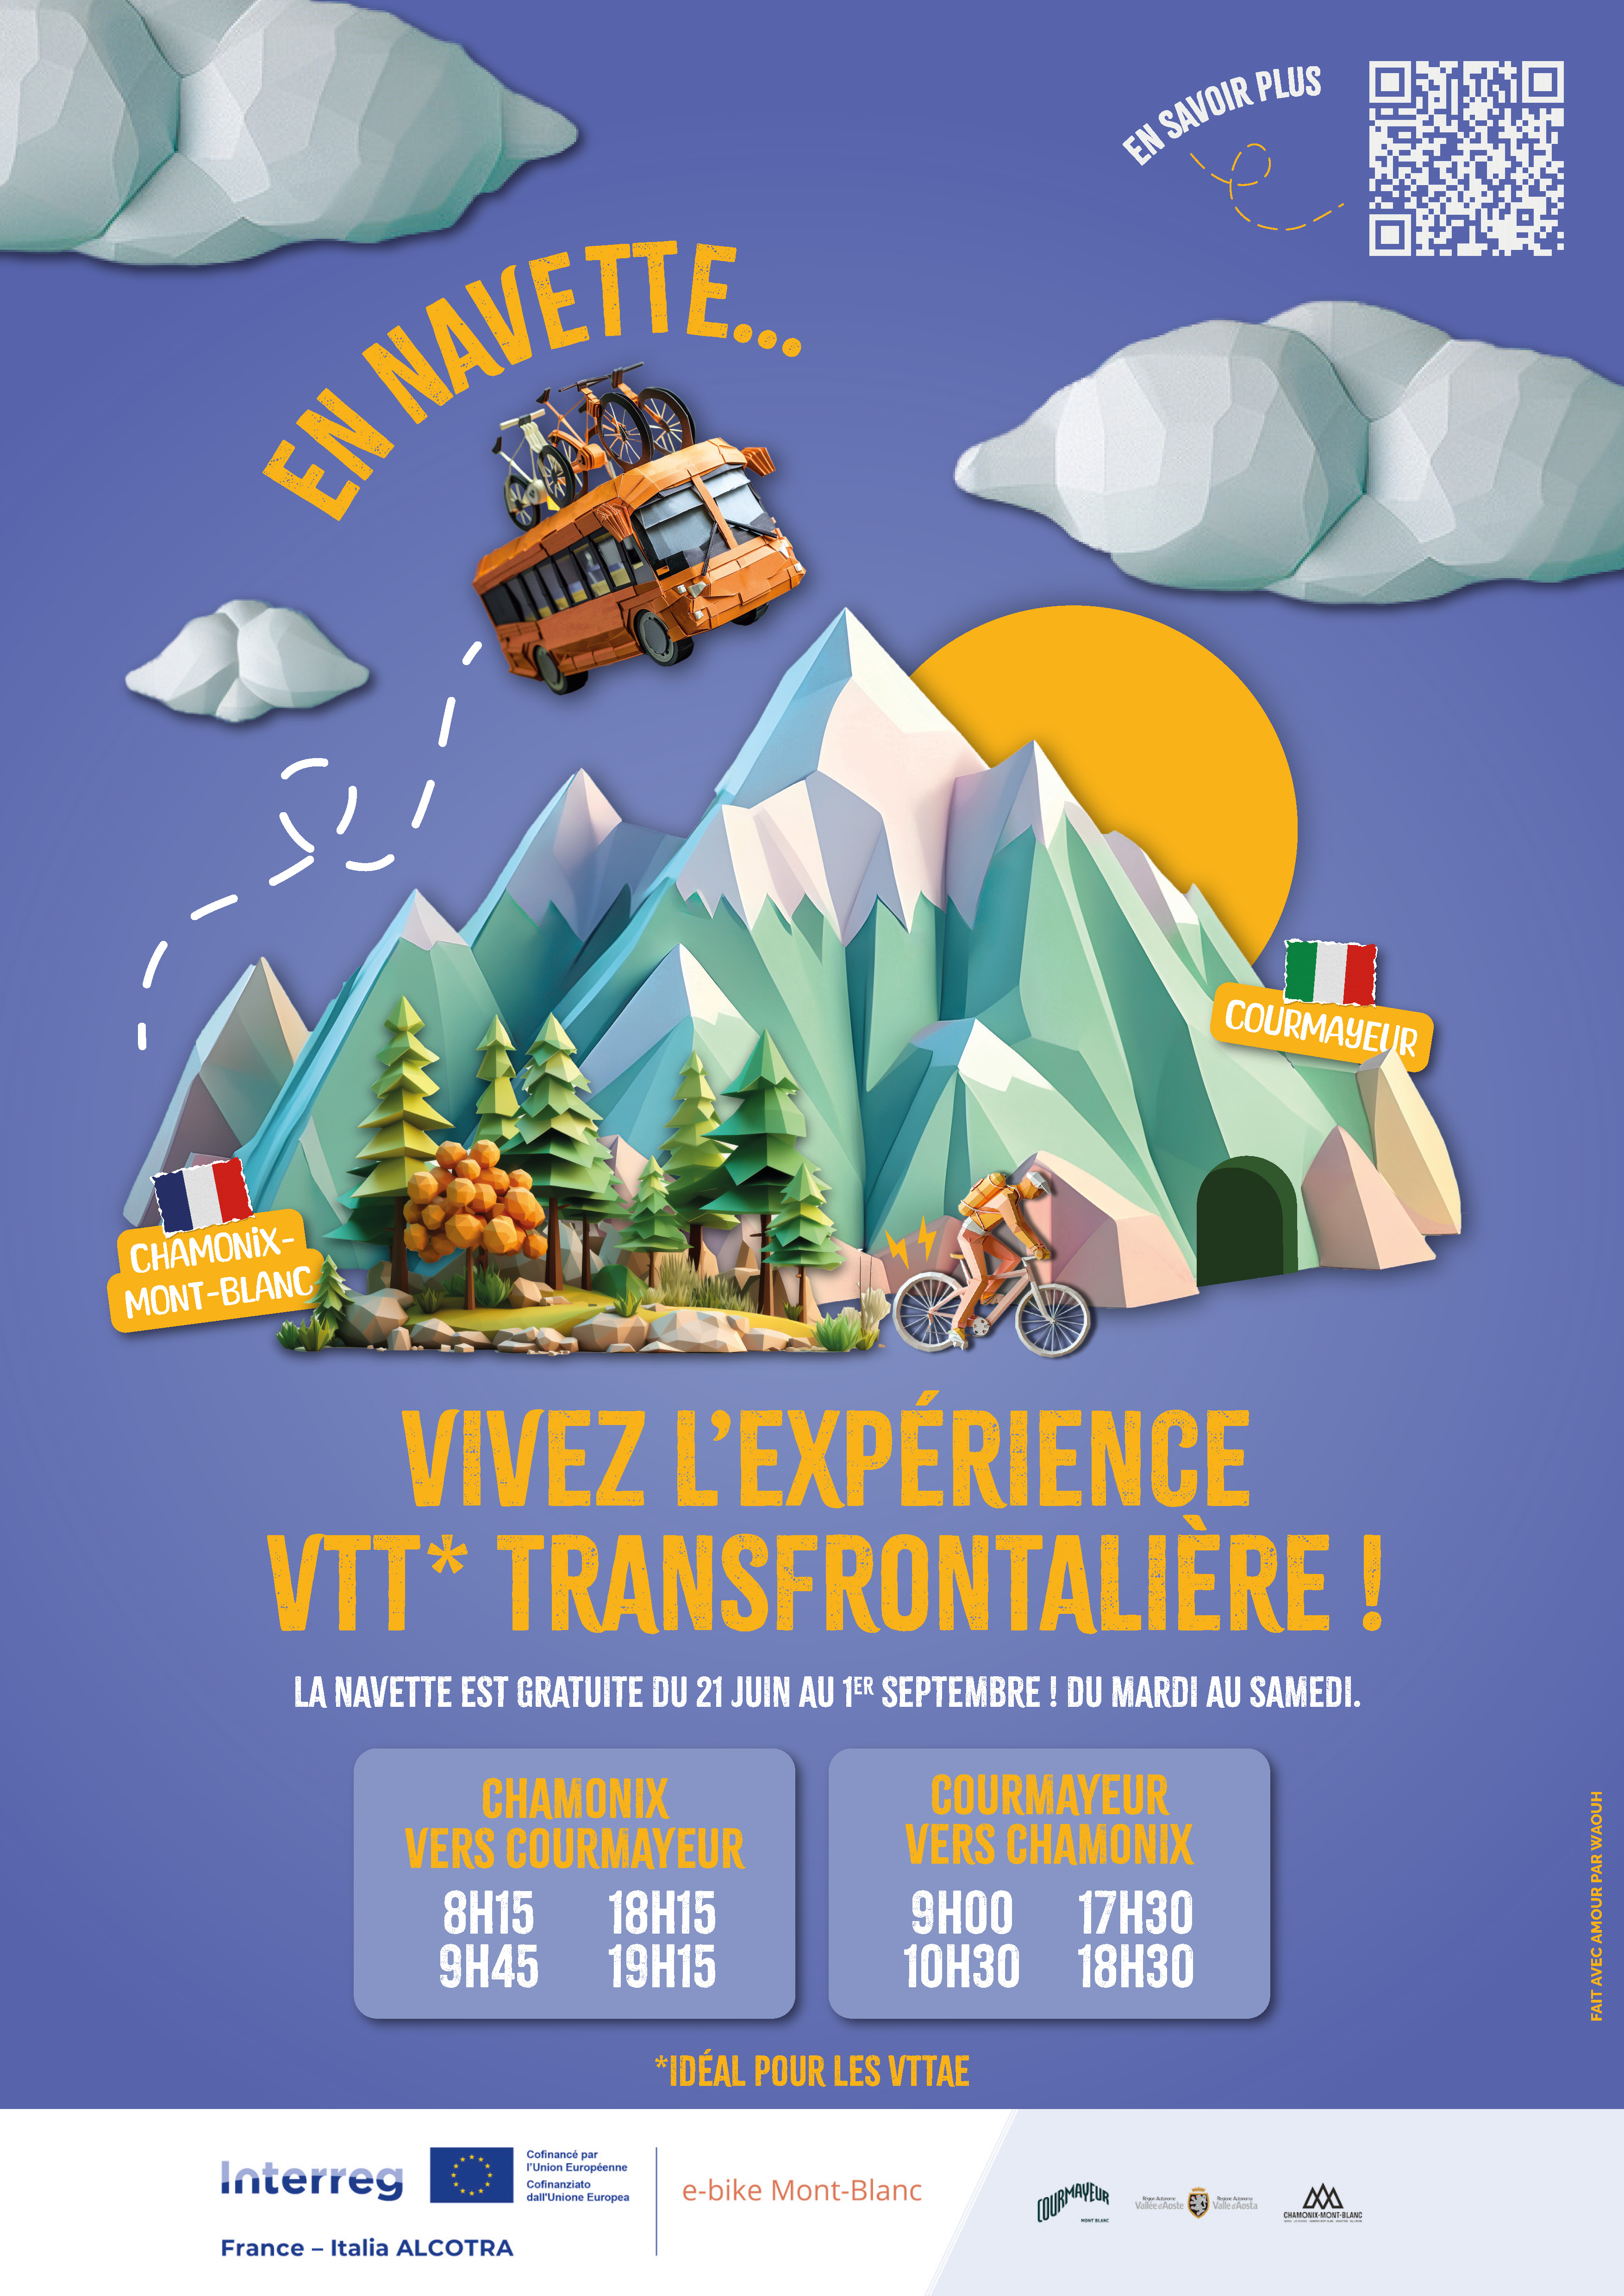 E-Bike Mont-Blanc, navettes gratuites : vivez l'expérience VTT transfrontalière jusqu'à fin août